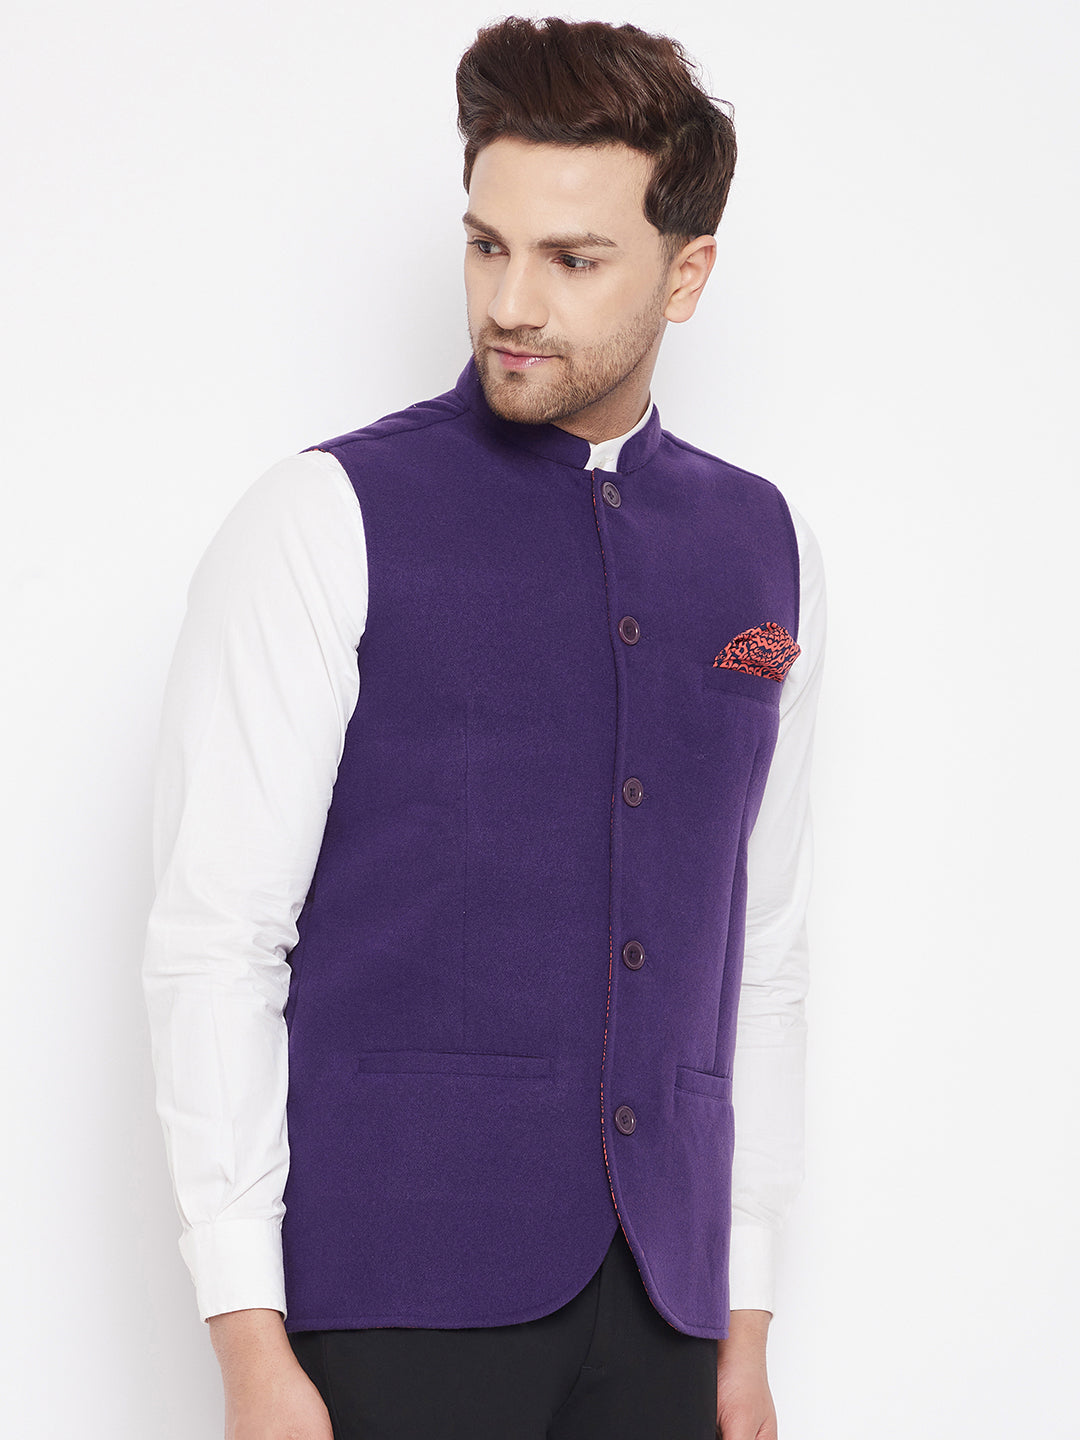 Men's Purple Color Nehru Jacket-Contrast Lining-Inbuilt Pocket Square - Even Apparels